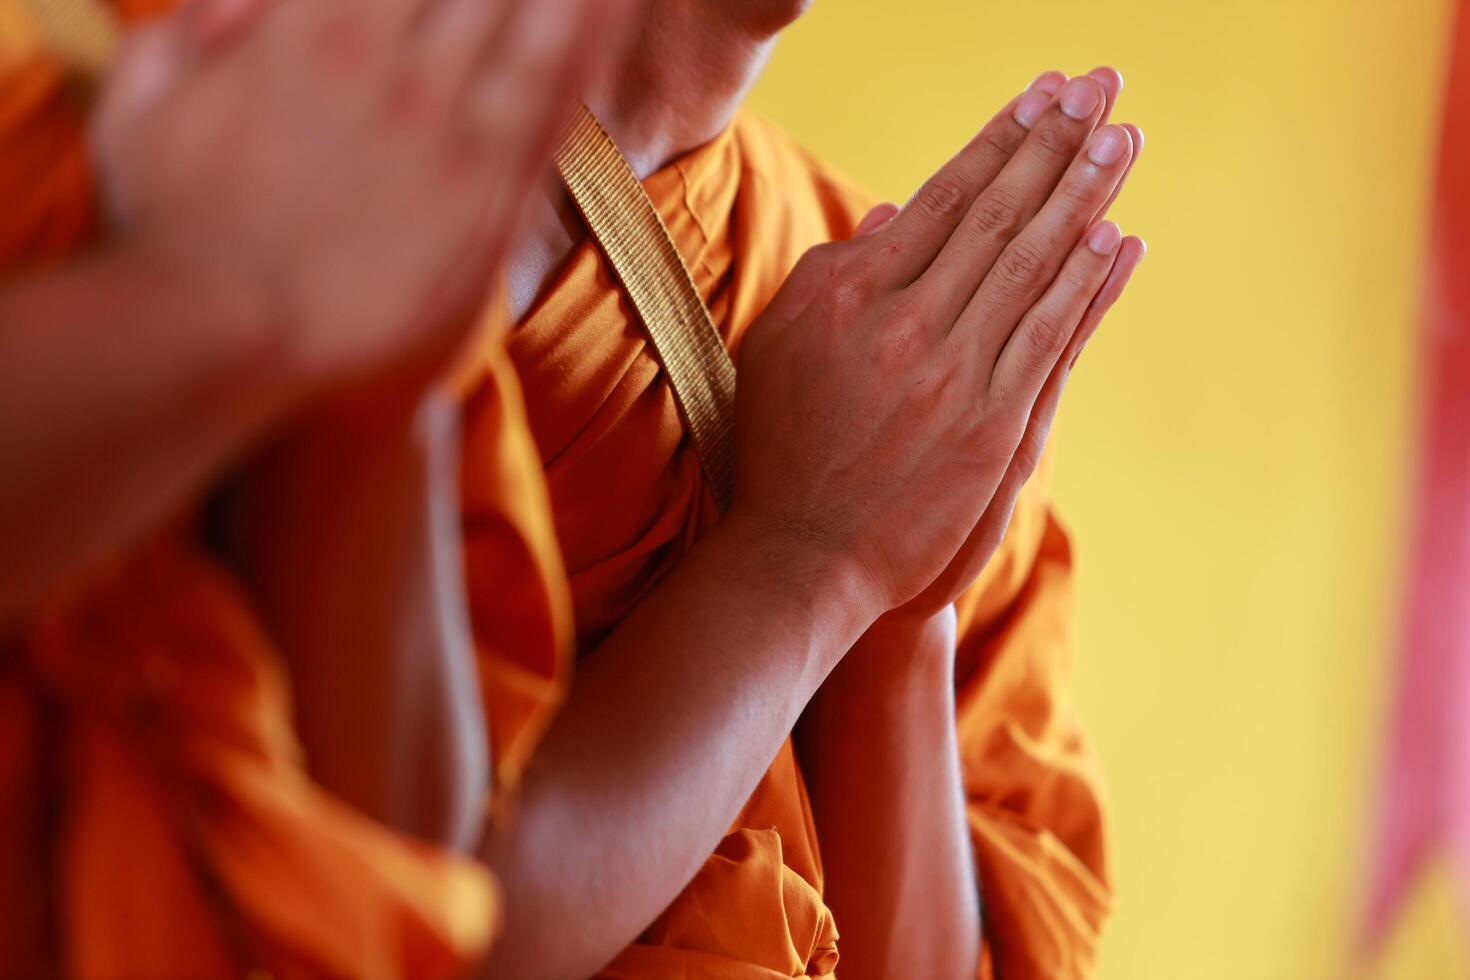 monjes son ejecutando budista rituales a orar para el almas de el fallecido a Vamos a cielo y encontrar felicidad después muerte. el concepto de budista rituales a orar para el espíritu de el fallecido. foto